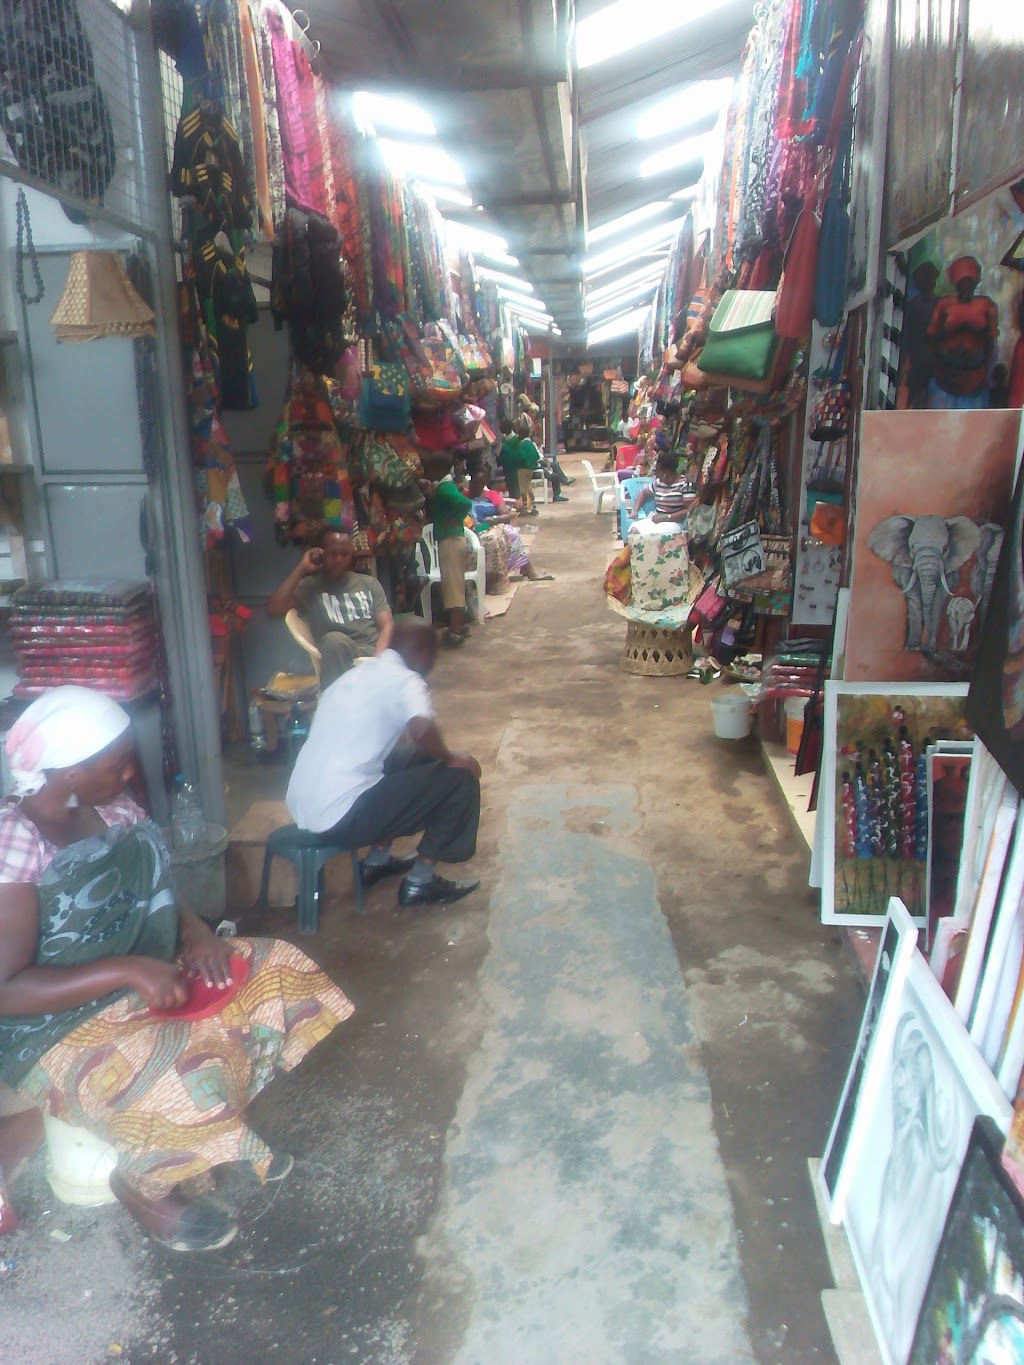 Maasai Market Curios&crafts (Vinyagon) | Fire Rd, Egg Harbor Township, NJ 08234 | Phone: 0744 363 233